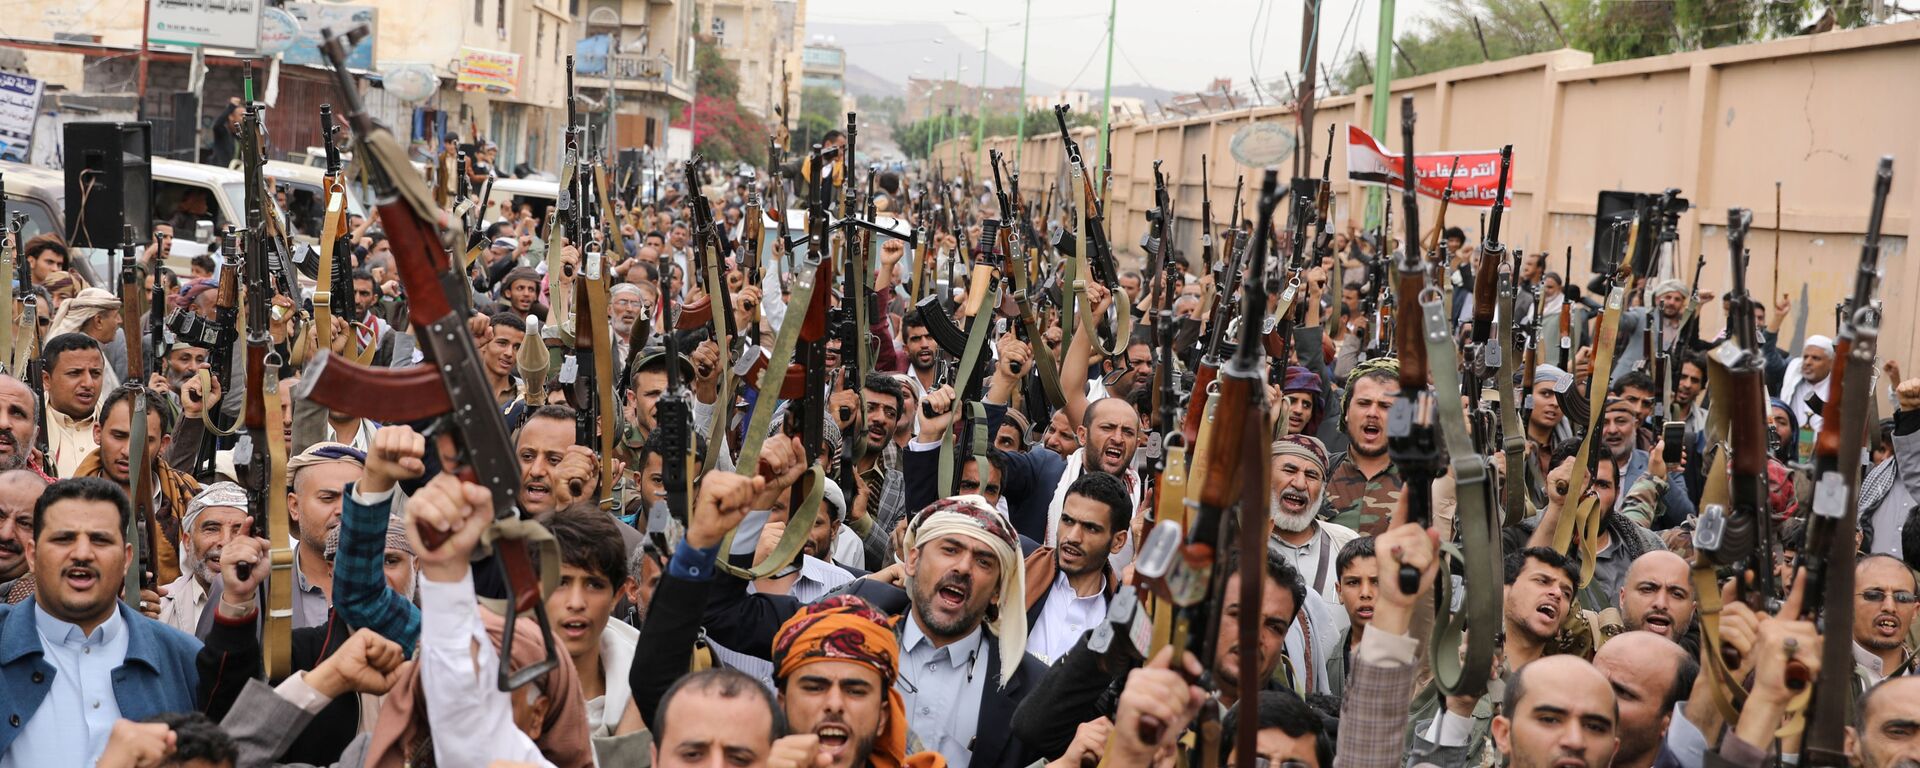 جماعة أنصار الله، الحوثيون، اليمن يو6 ليو 2020 - سبوتنيك عربي, 1920, 15.08.2021